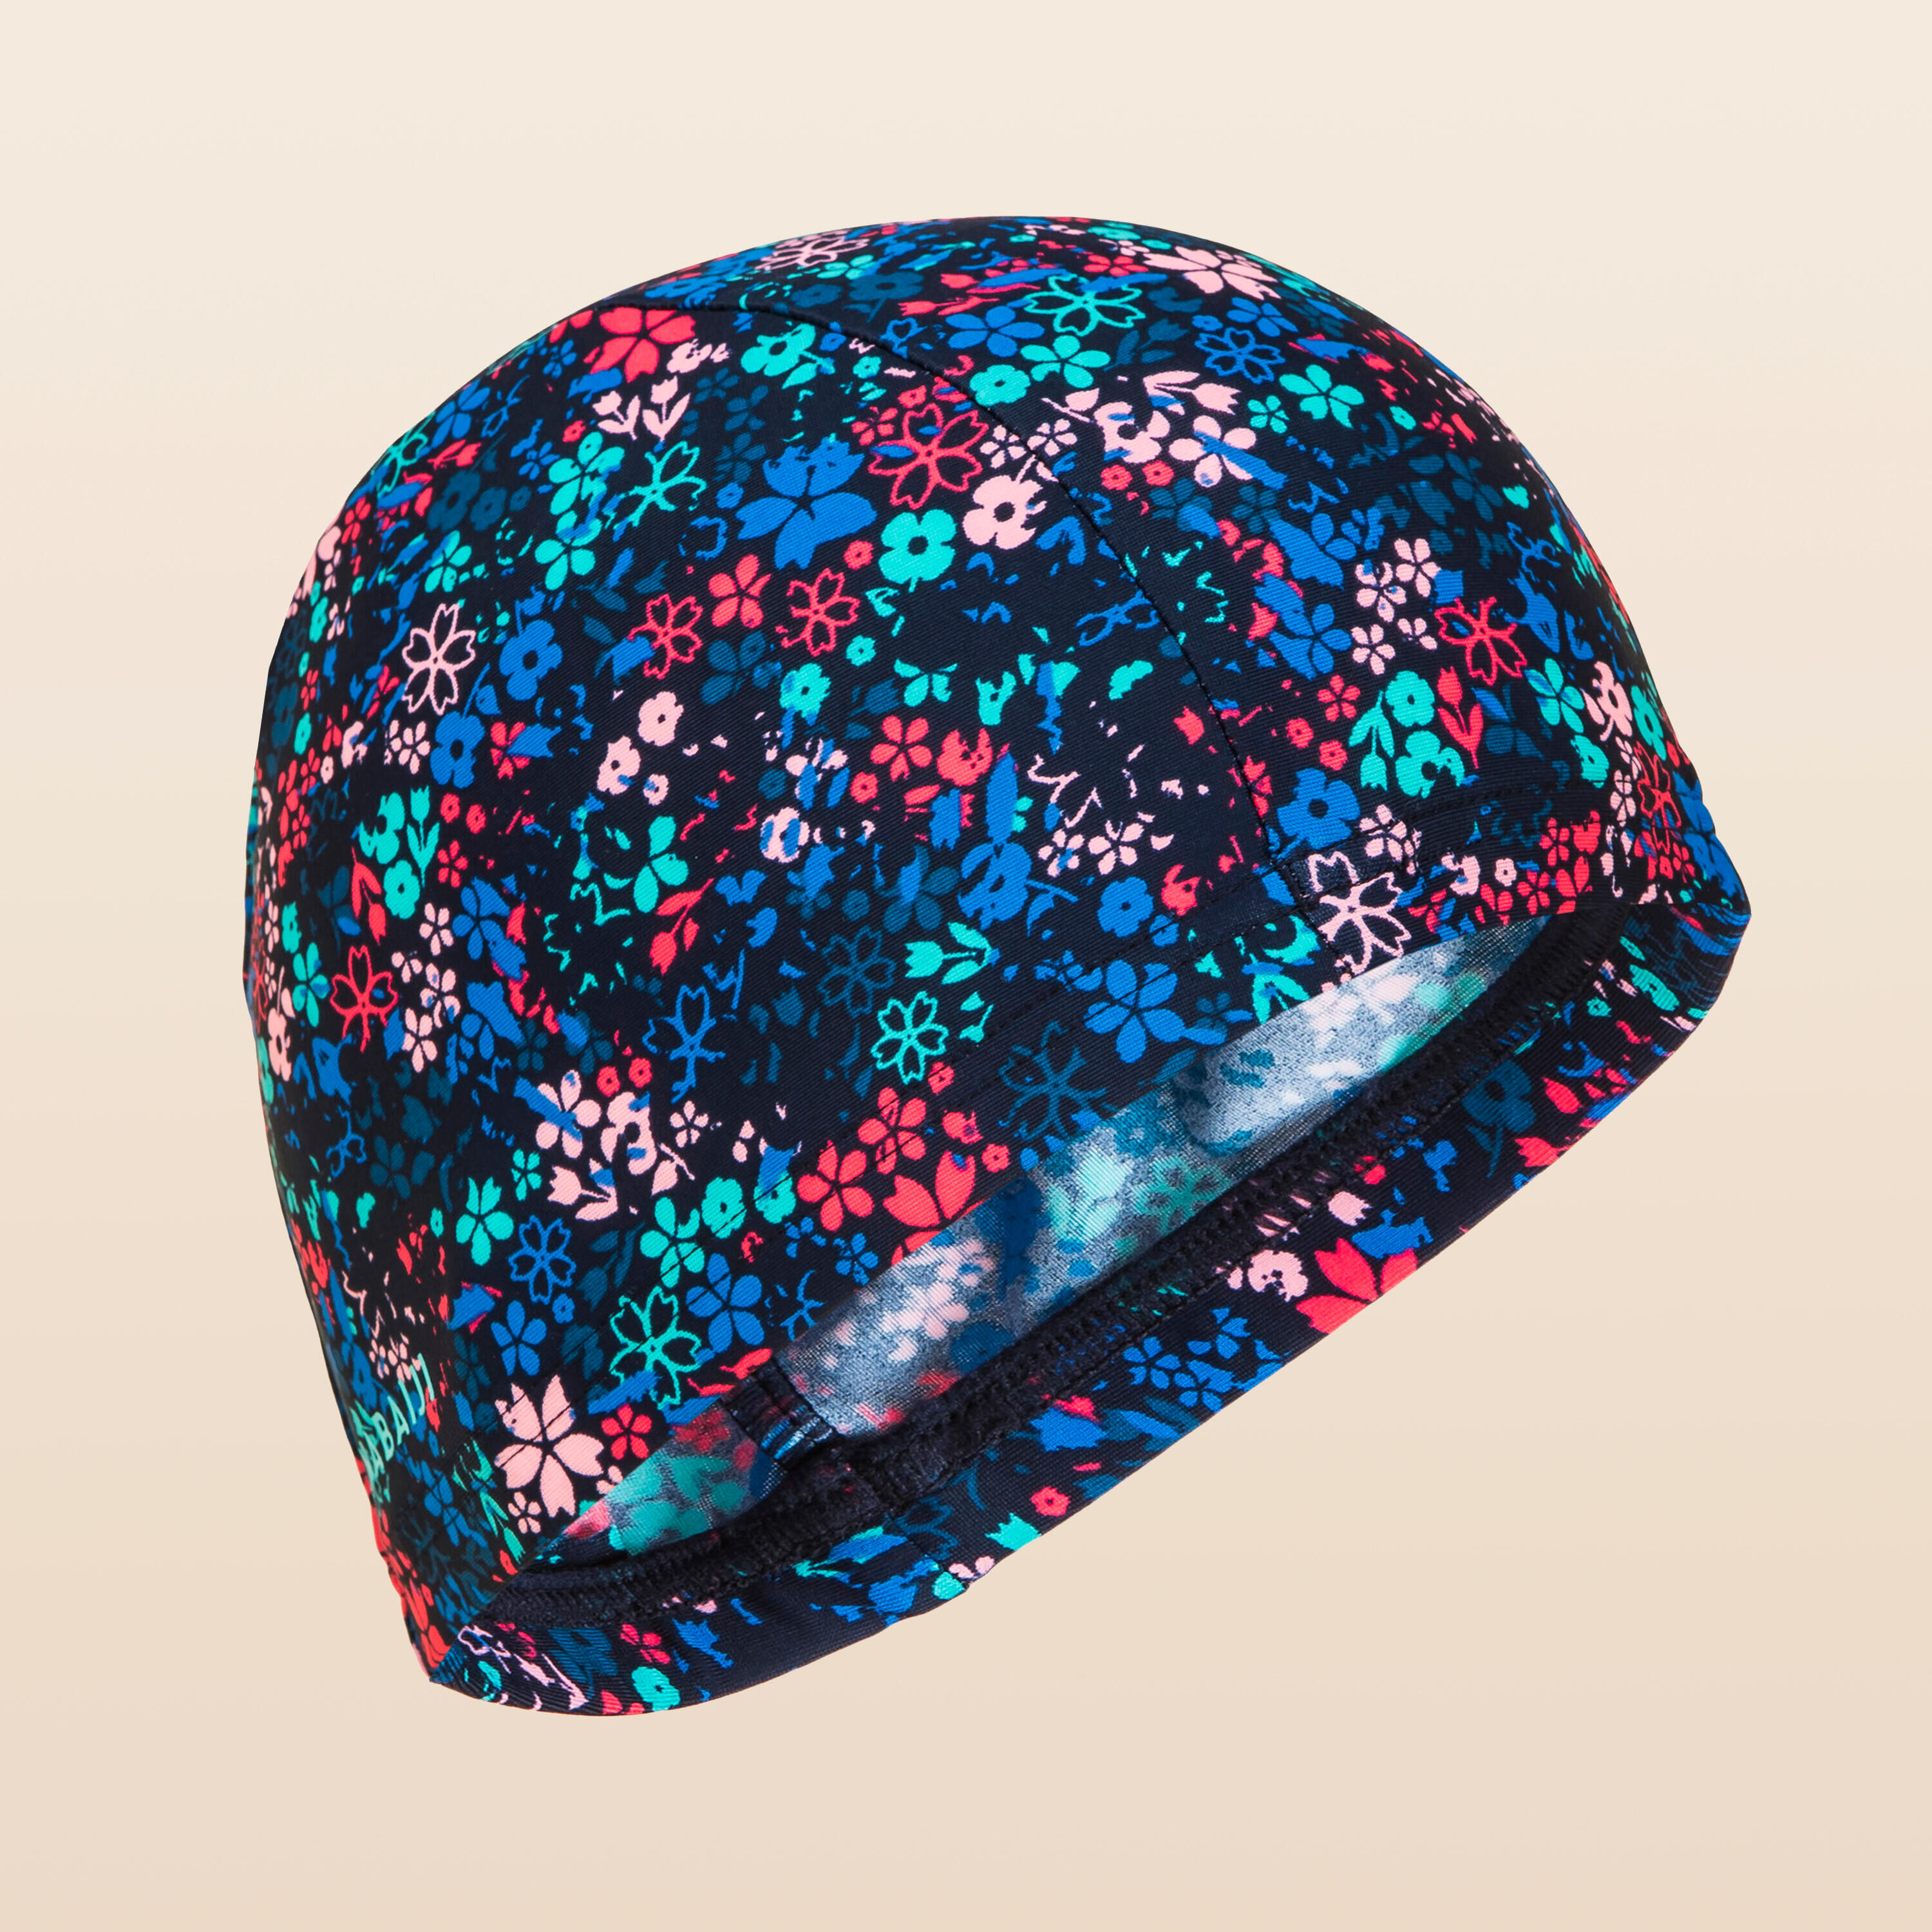 NABAIJI Mesh swim cap - Printed fabric - Lib blue turquoise pink